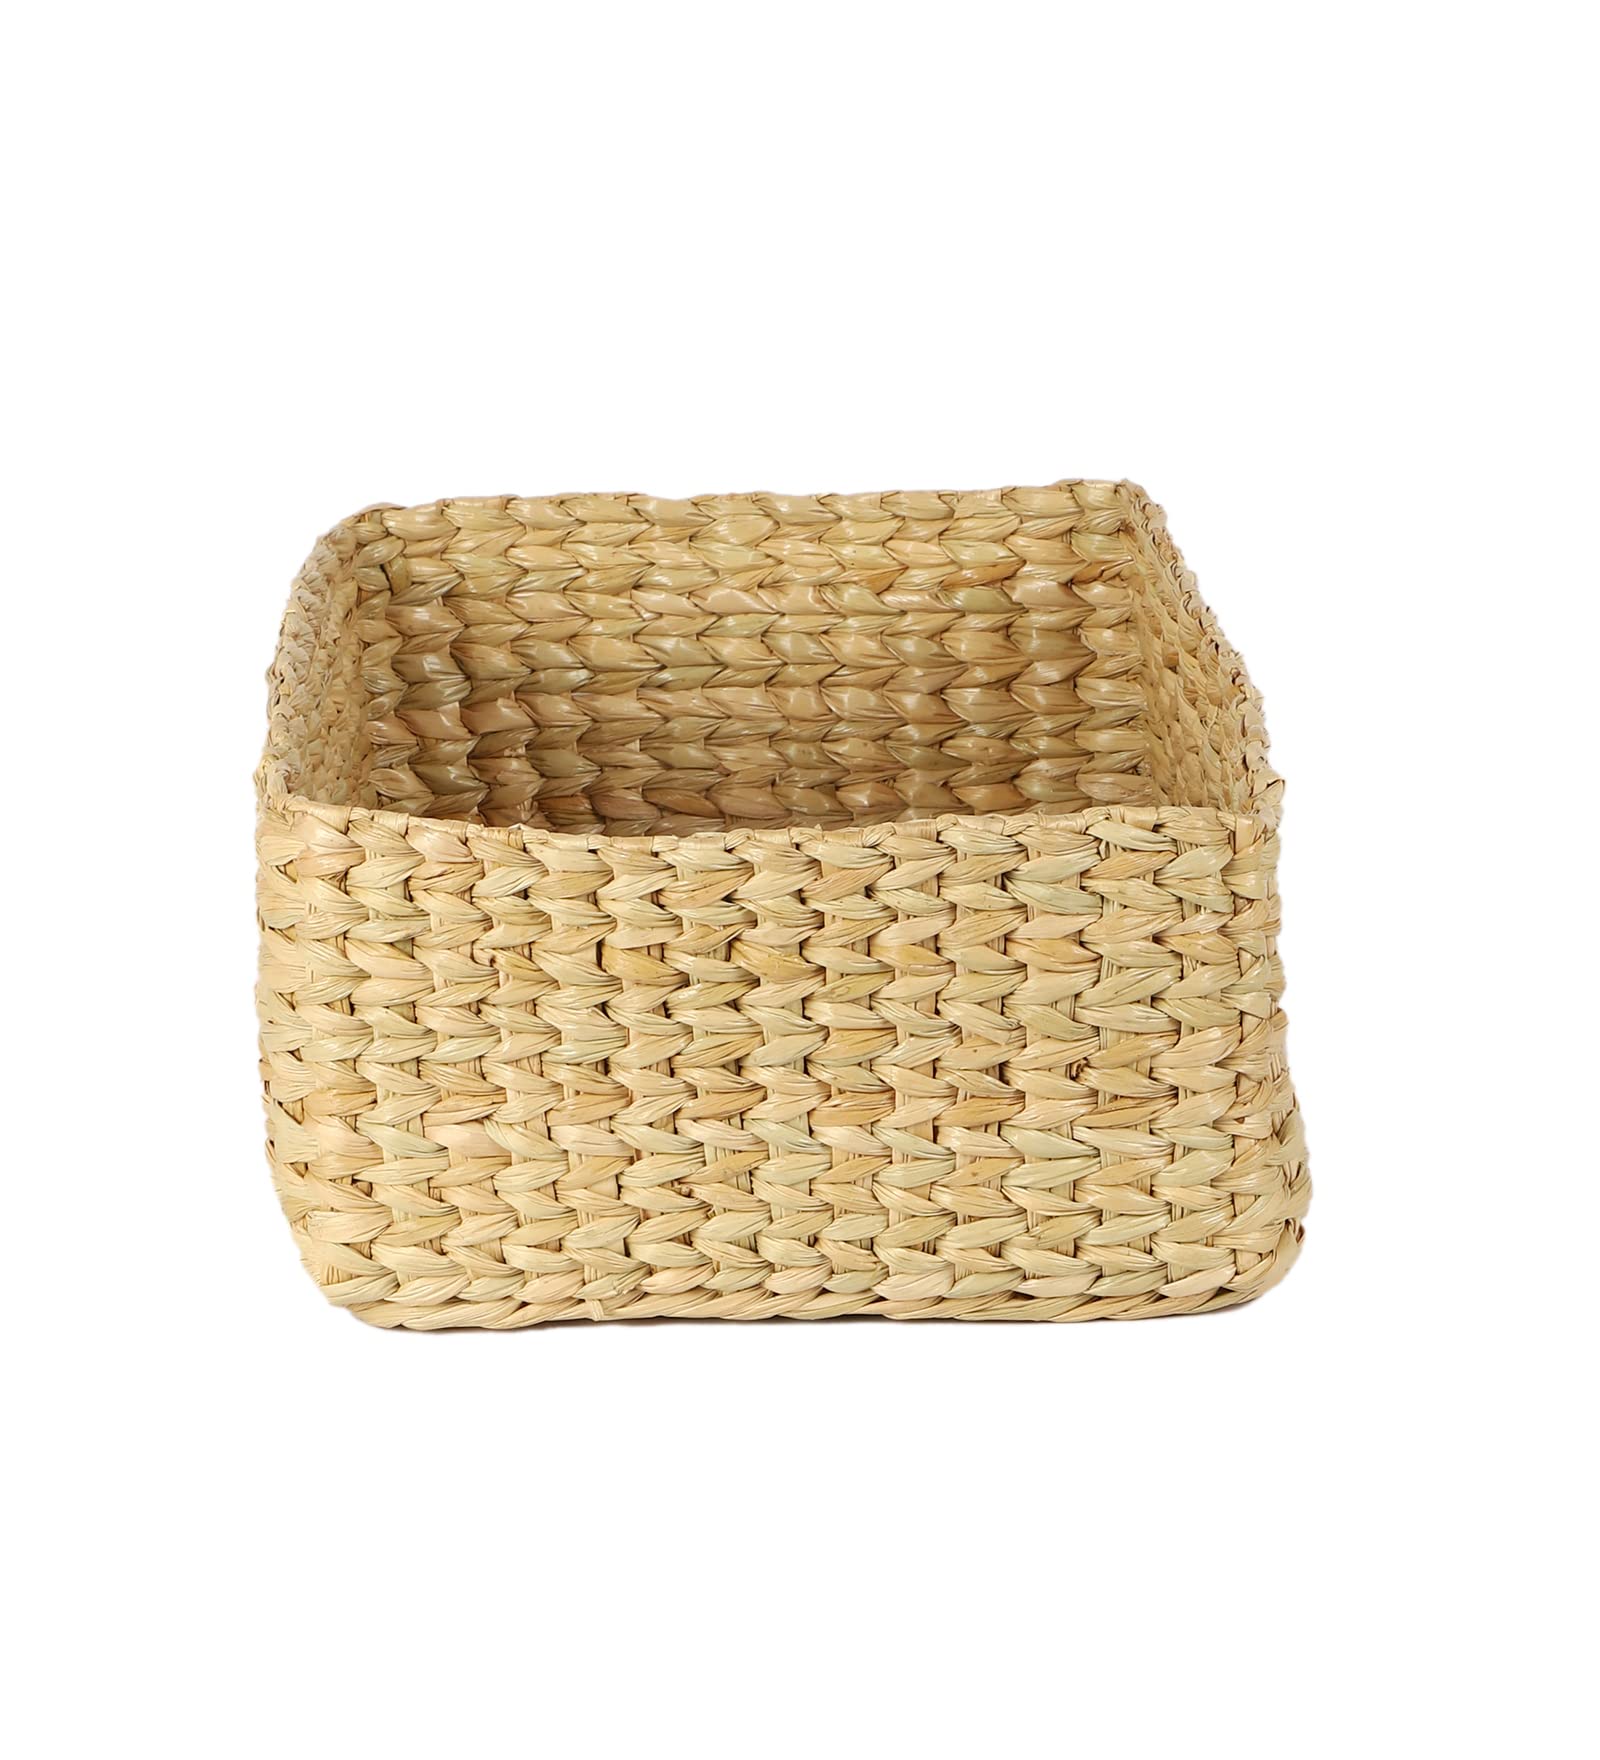 AKWAY Storage Baskets | Cane or Bamboo Basket | Tray Online as Gift Hamper Basket/Wardrobe Basket (Medium) (LARGE) - Akway